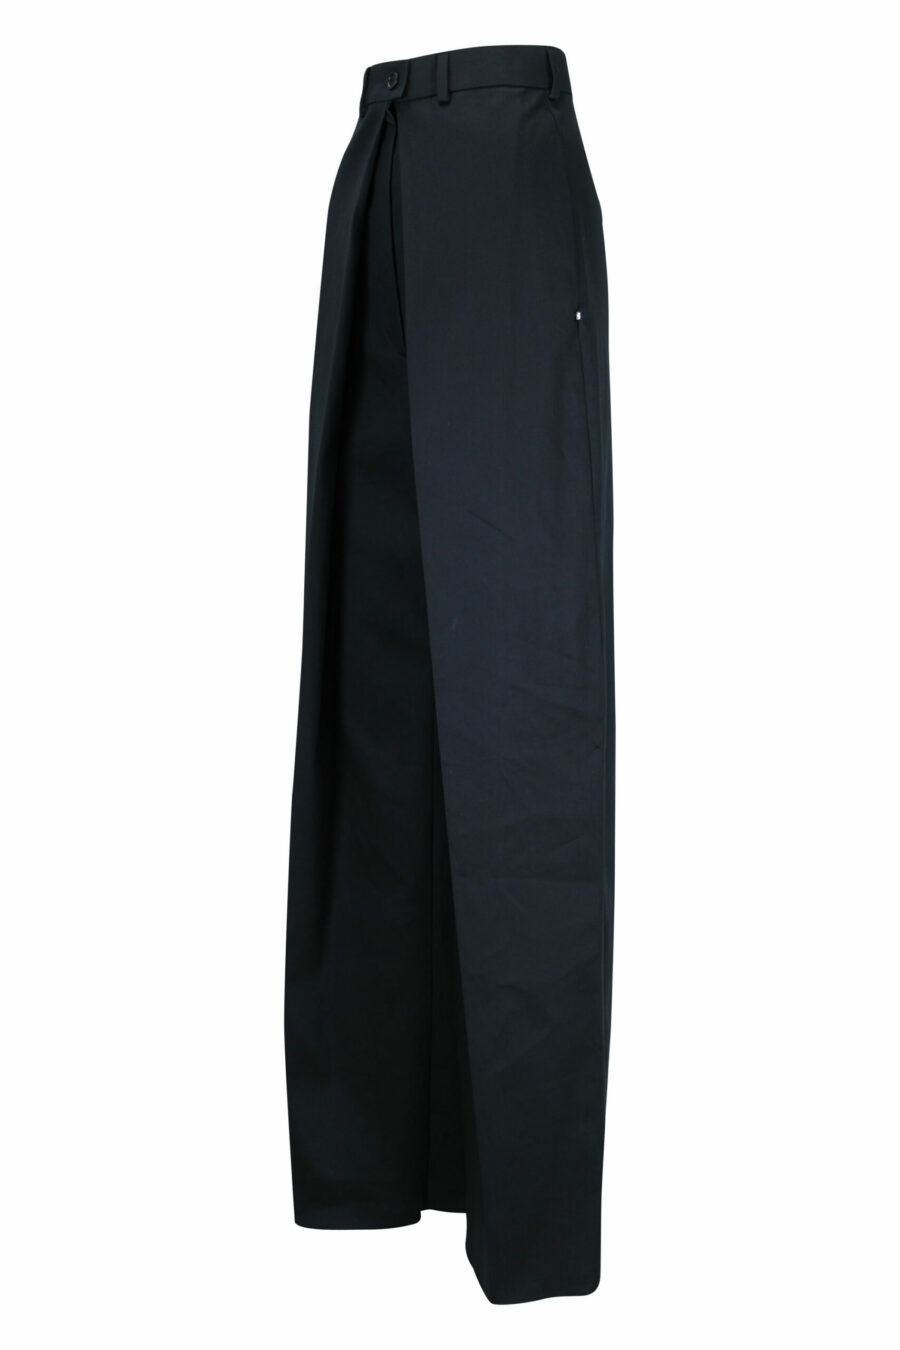 Pantalón negro de capas ancho - 21310841060032 2 scaled